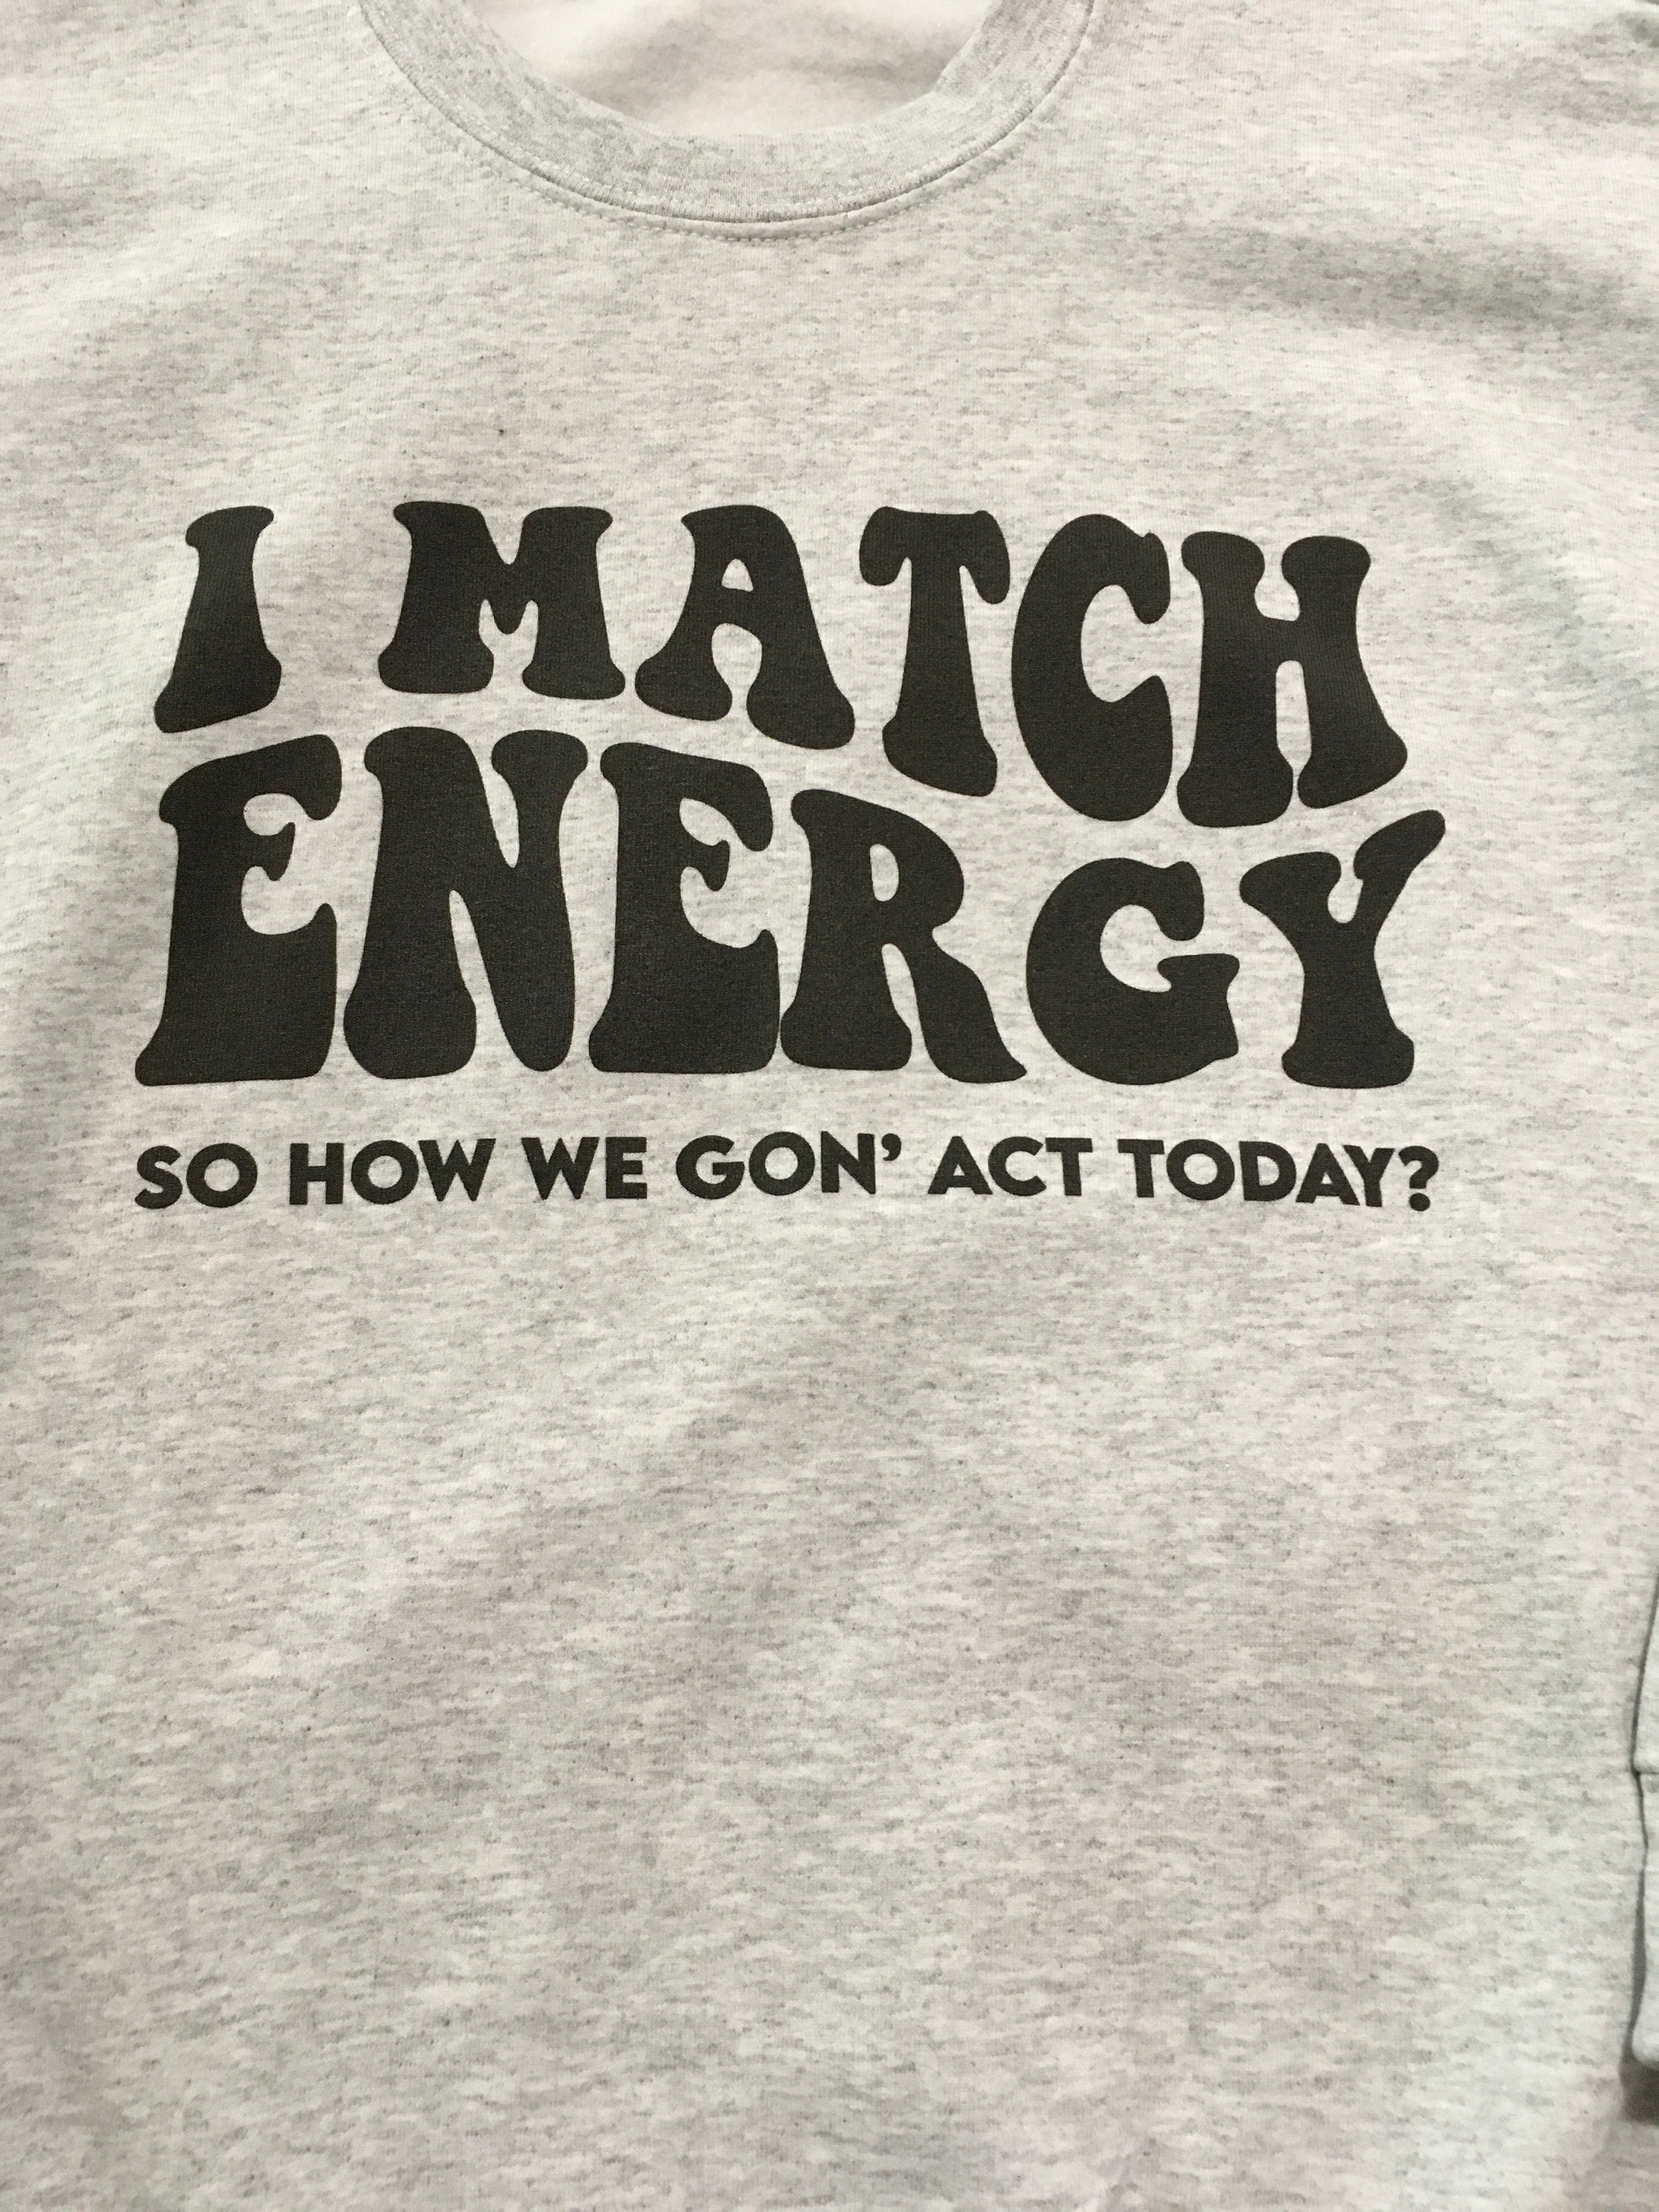 I Match Energy Sweatshirt